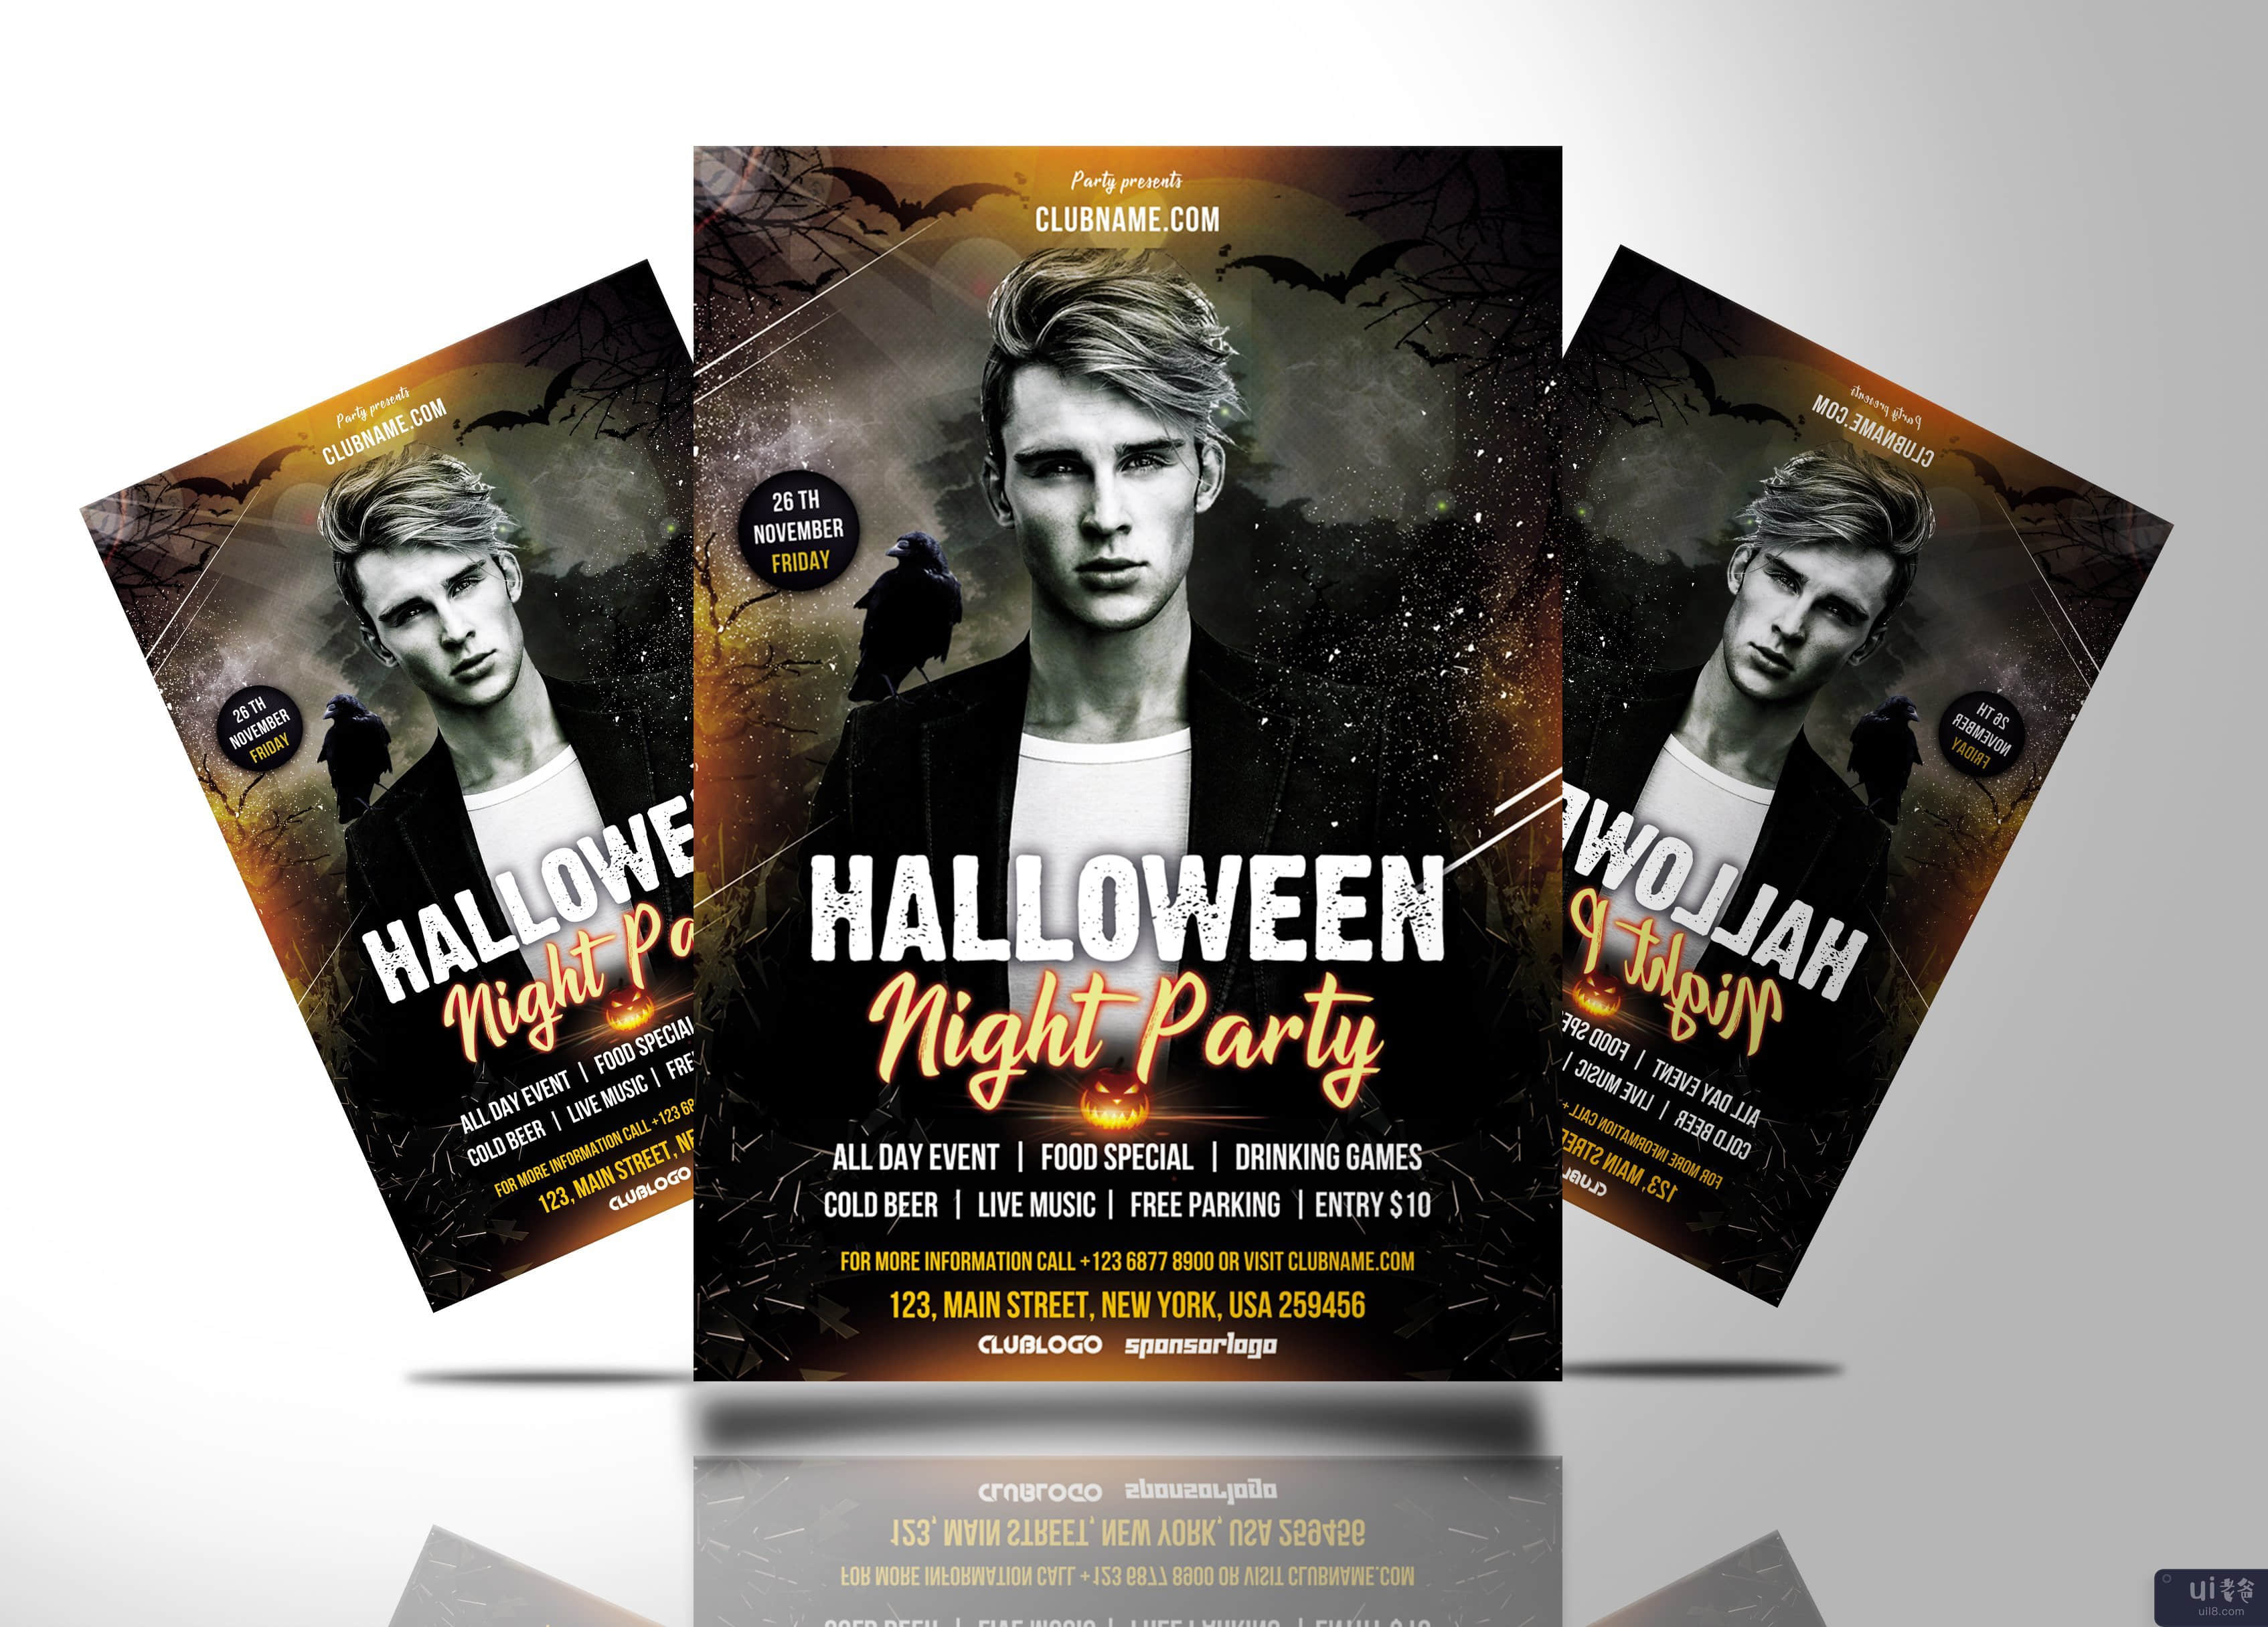 万圣节之夜派对传单(Halloween Night Party Flyer)插图1